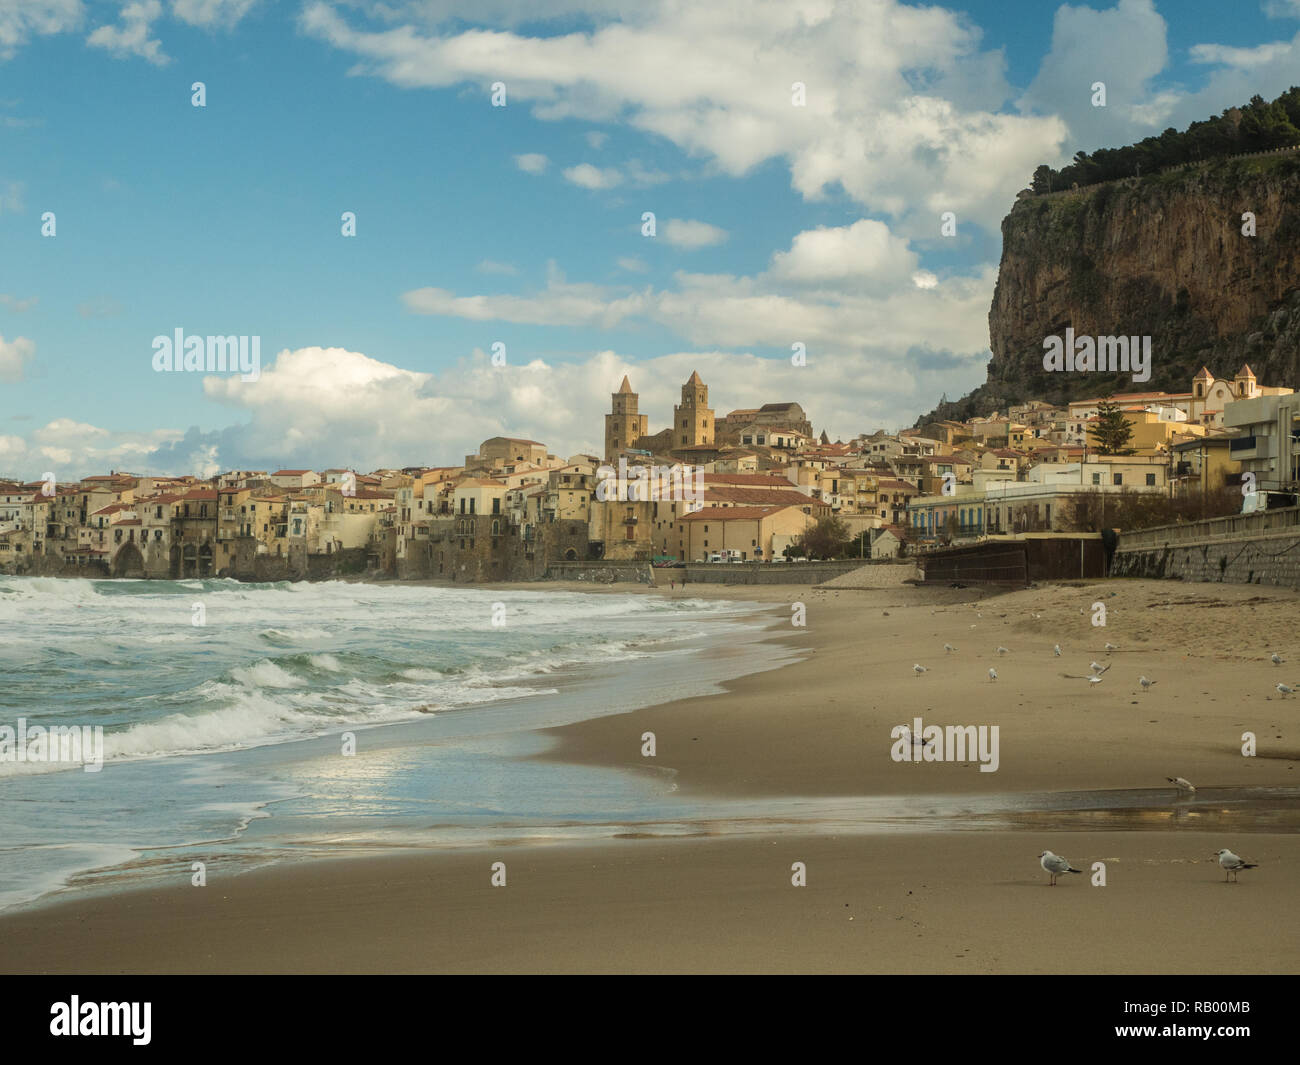 La plage et de la ville de Cefalù, avec sa cathédrale, le nord de la Sicile, Italie Banque D'Images